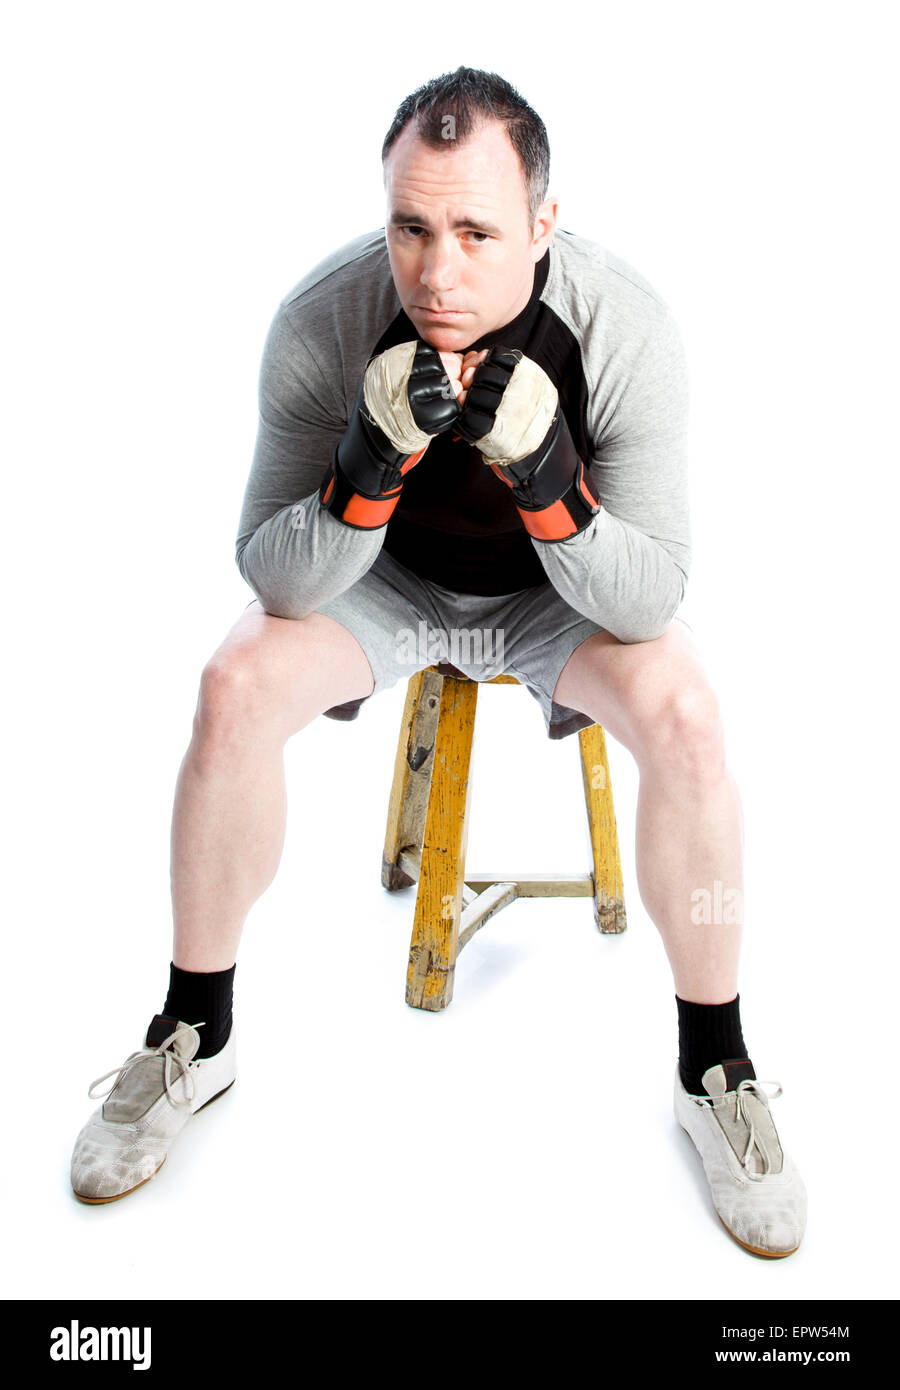 Boxeador caucásico de 40 años aislado en un fondo blanco. Foto de stock